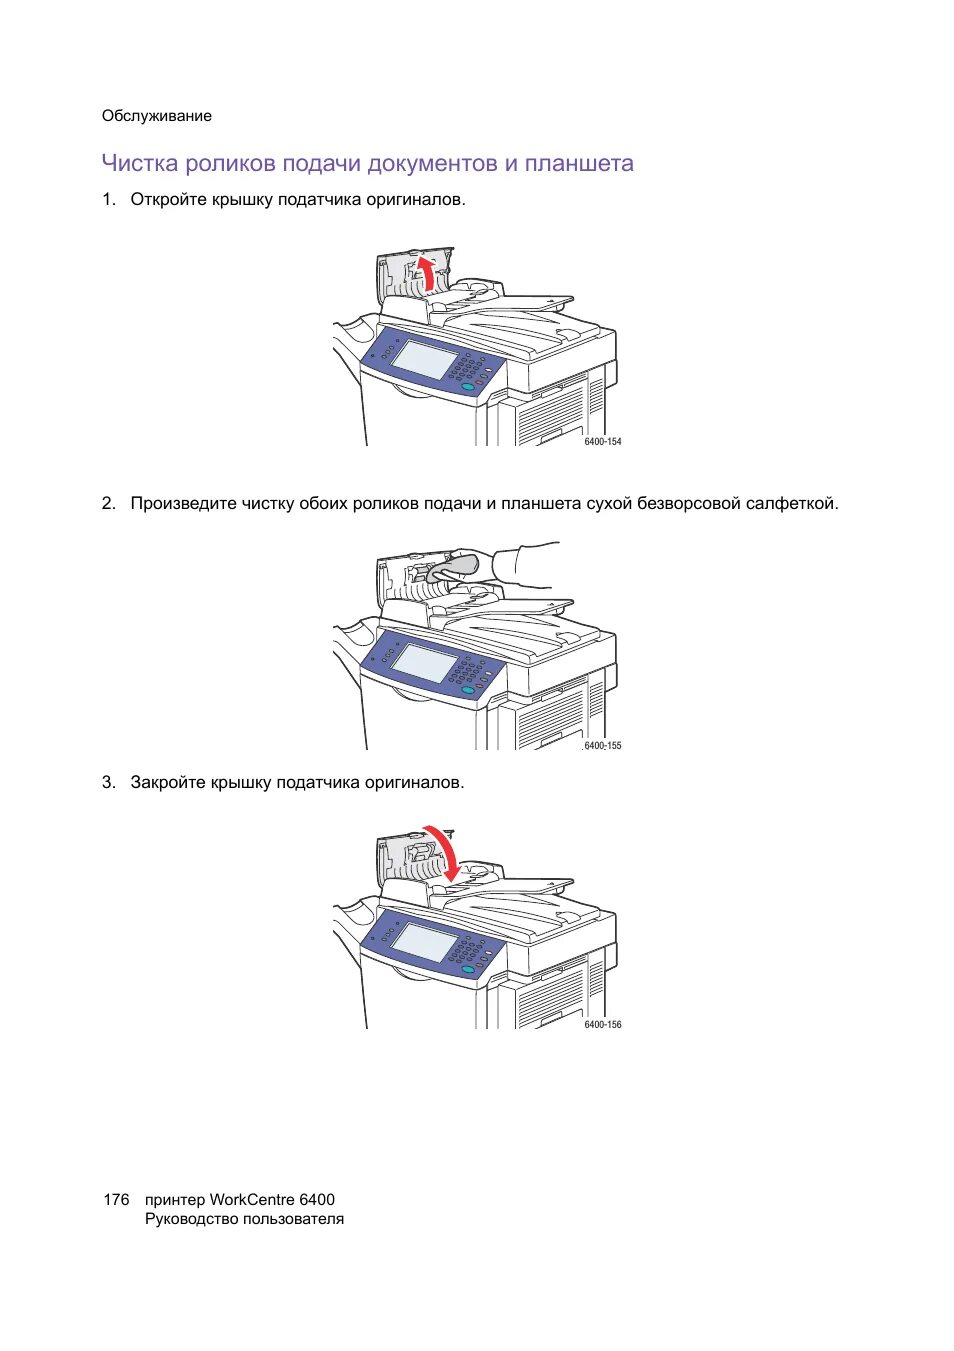 Как почистить головку принтера. Инструкция МФУ ксерокс документ центр. Таблица инструкции МФУ принтера. Набор подачи документов принтер это. Инструкция сборки и разборки принтера.